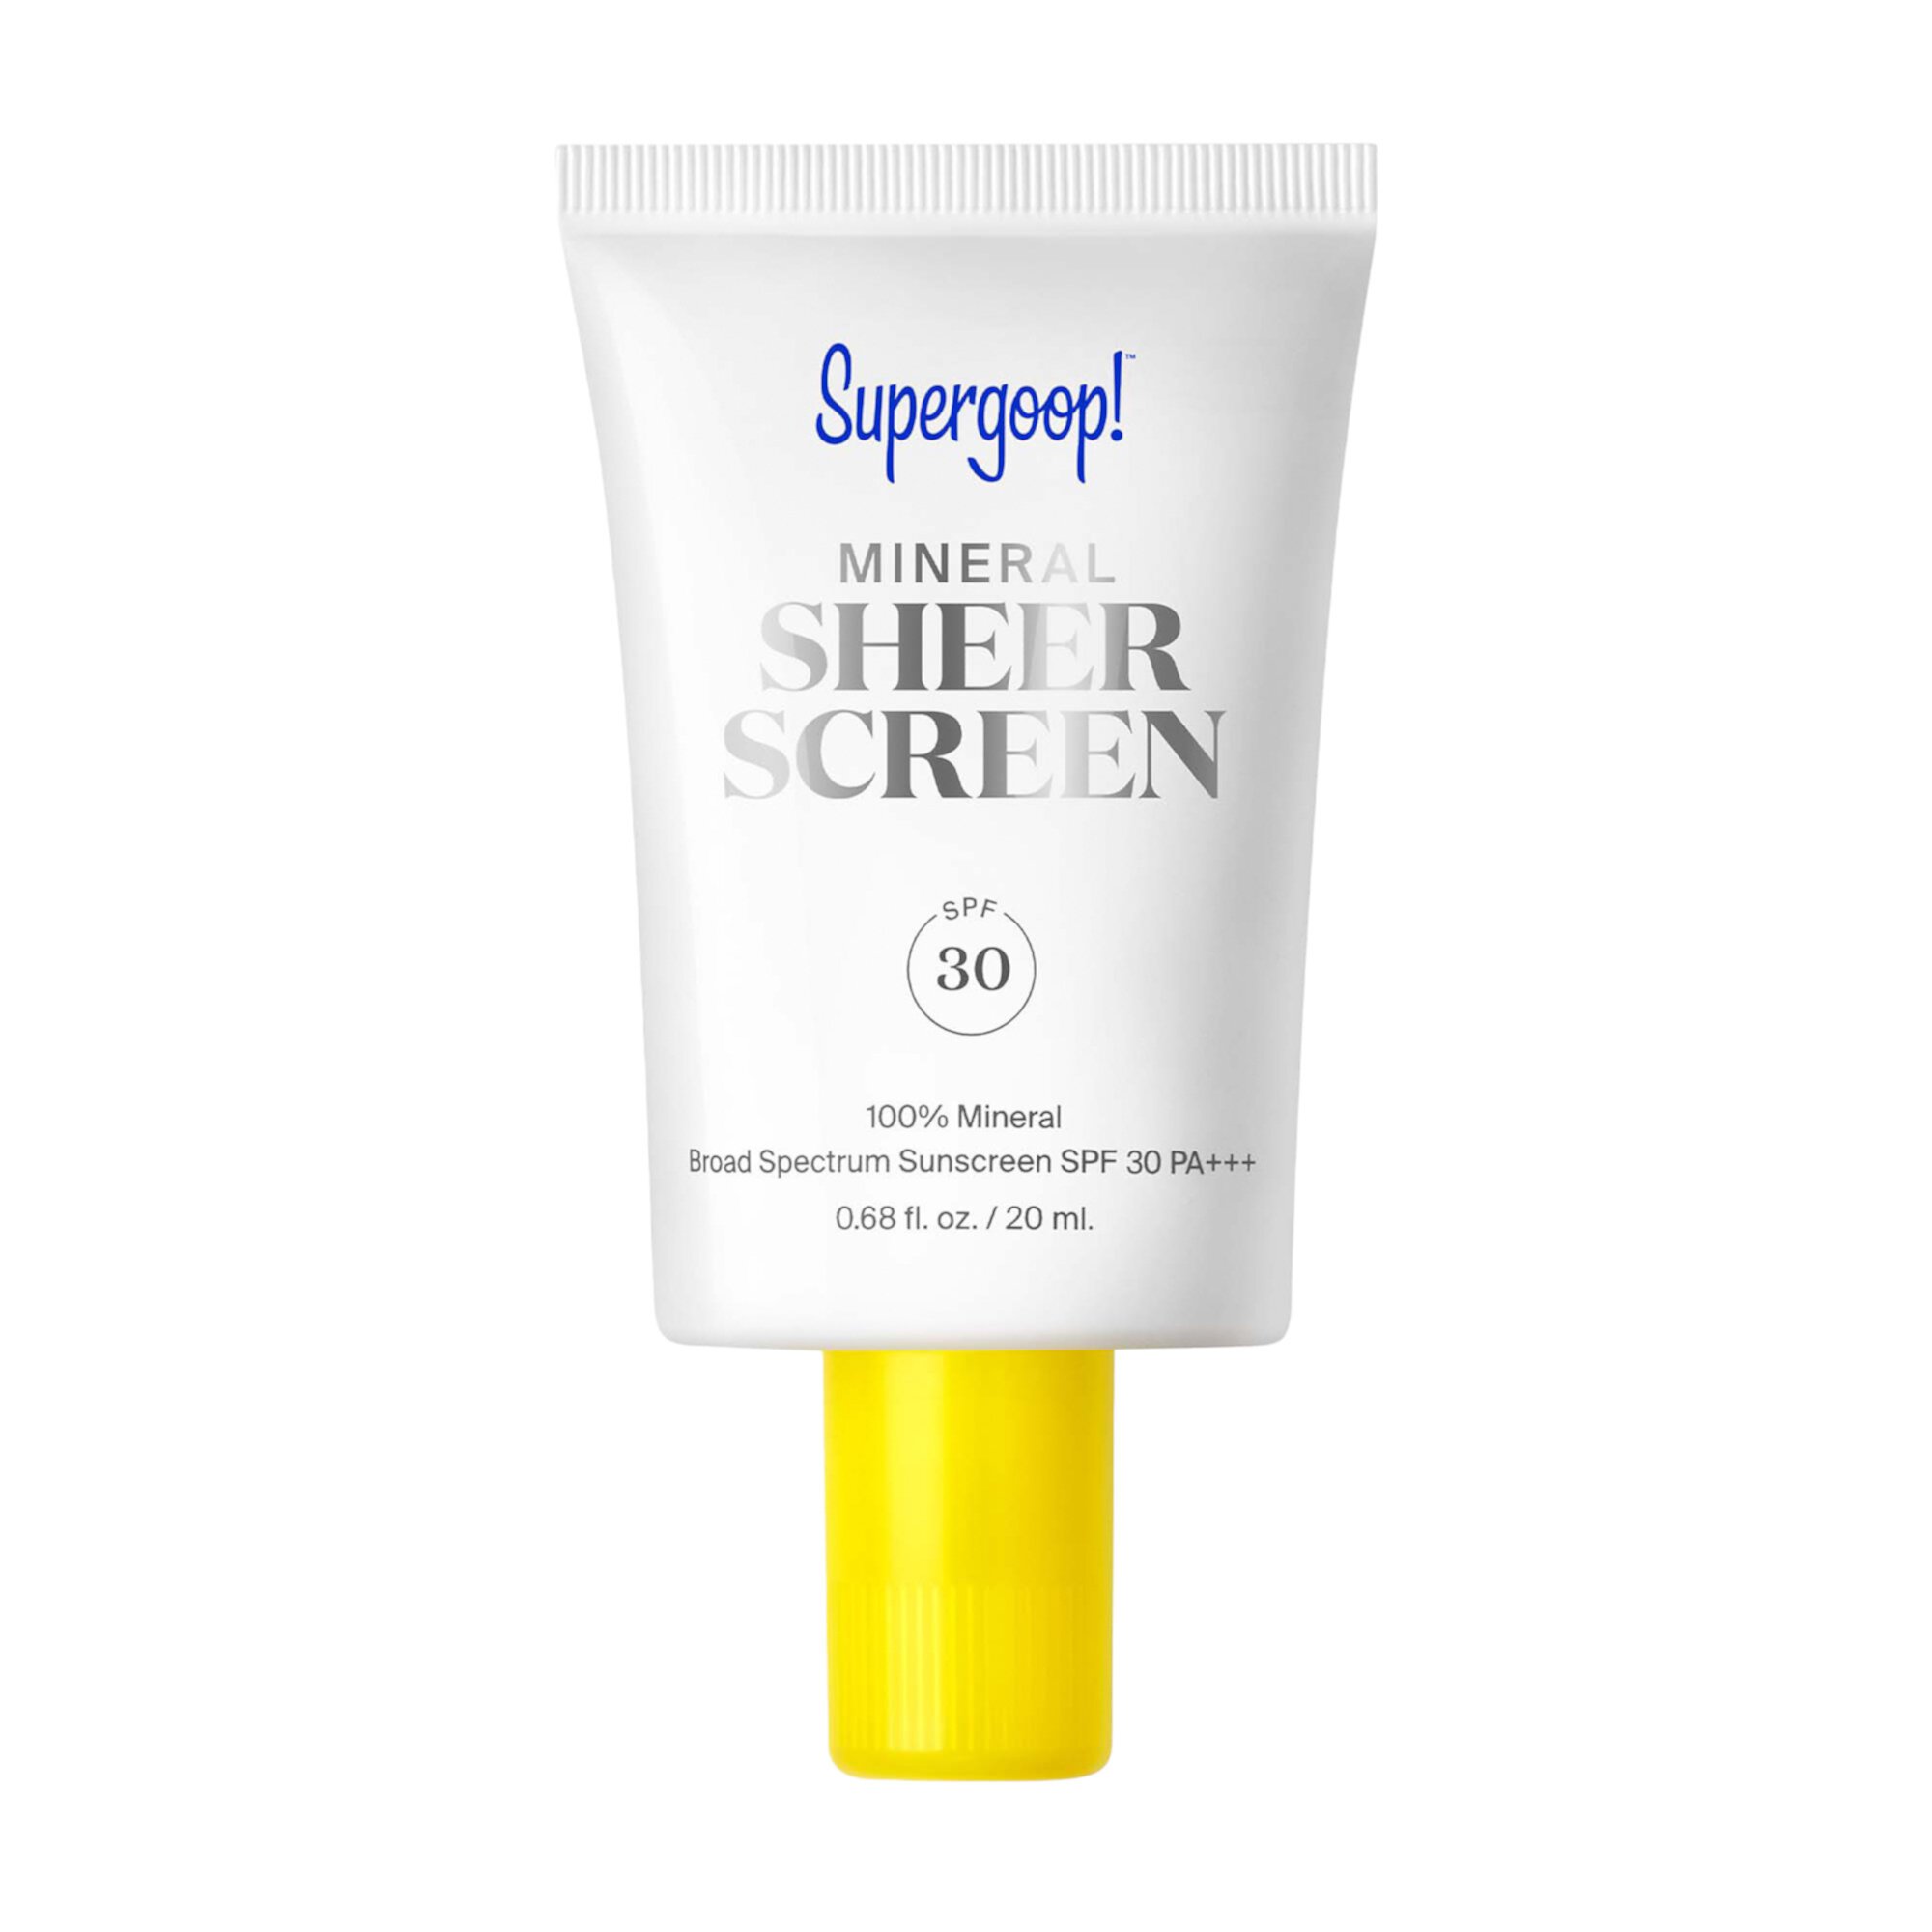 Мини-минеральный солнцезащитный крем Sheerscreen SPF 30 Supergoop!